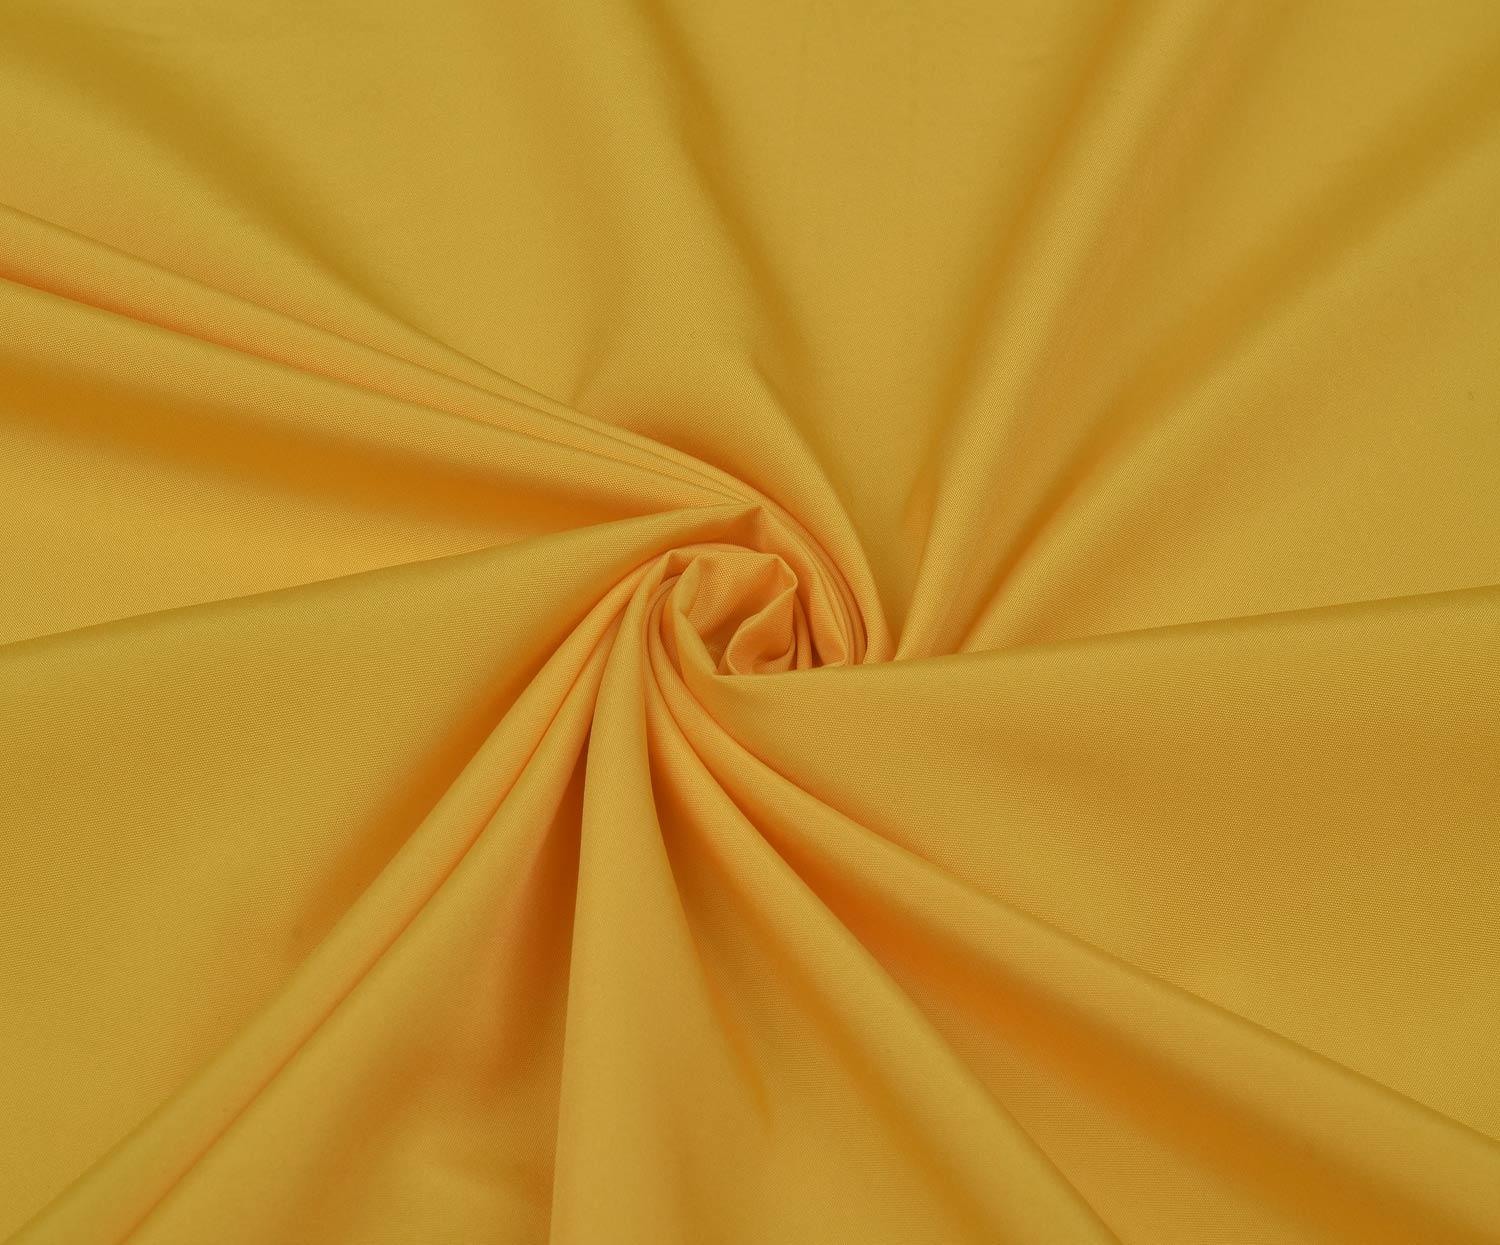 Ткань пузырьки. Красивые ткани. Органза желтая.